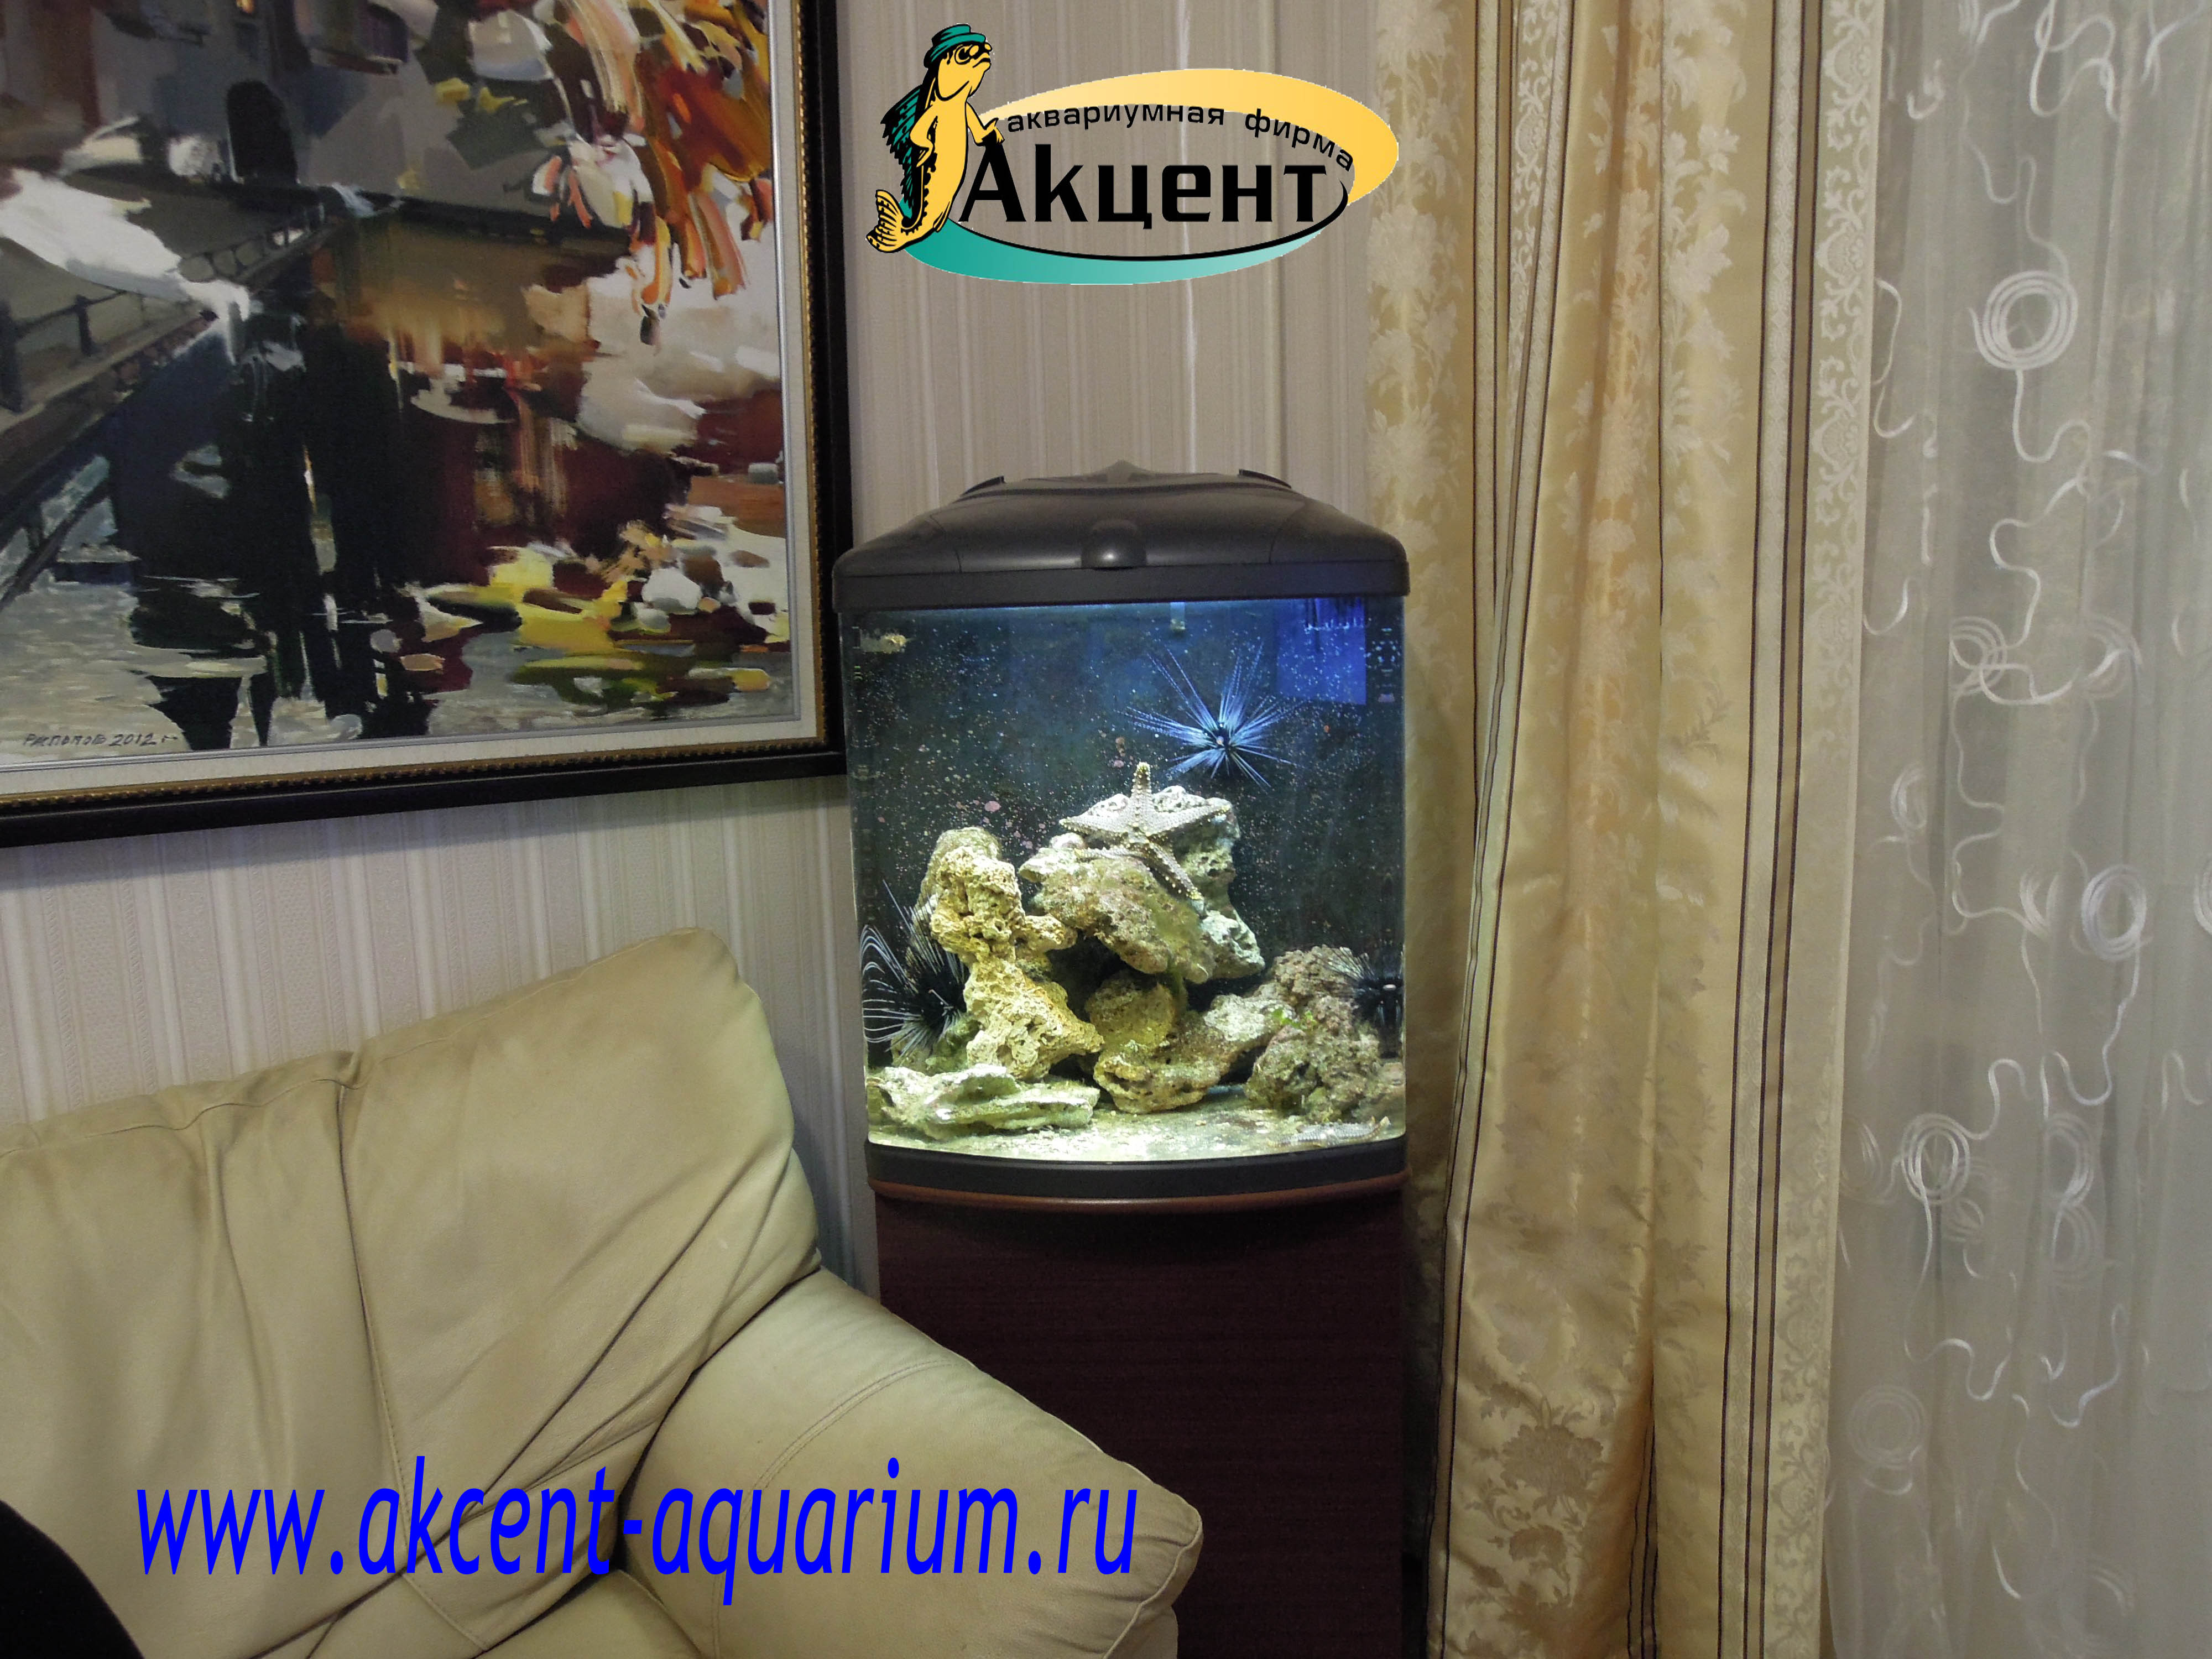 Акцент-аквариум, морской аквариум 130 литров